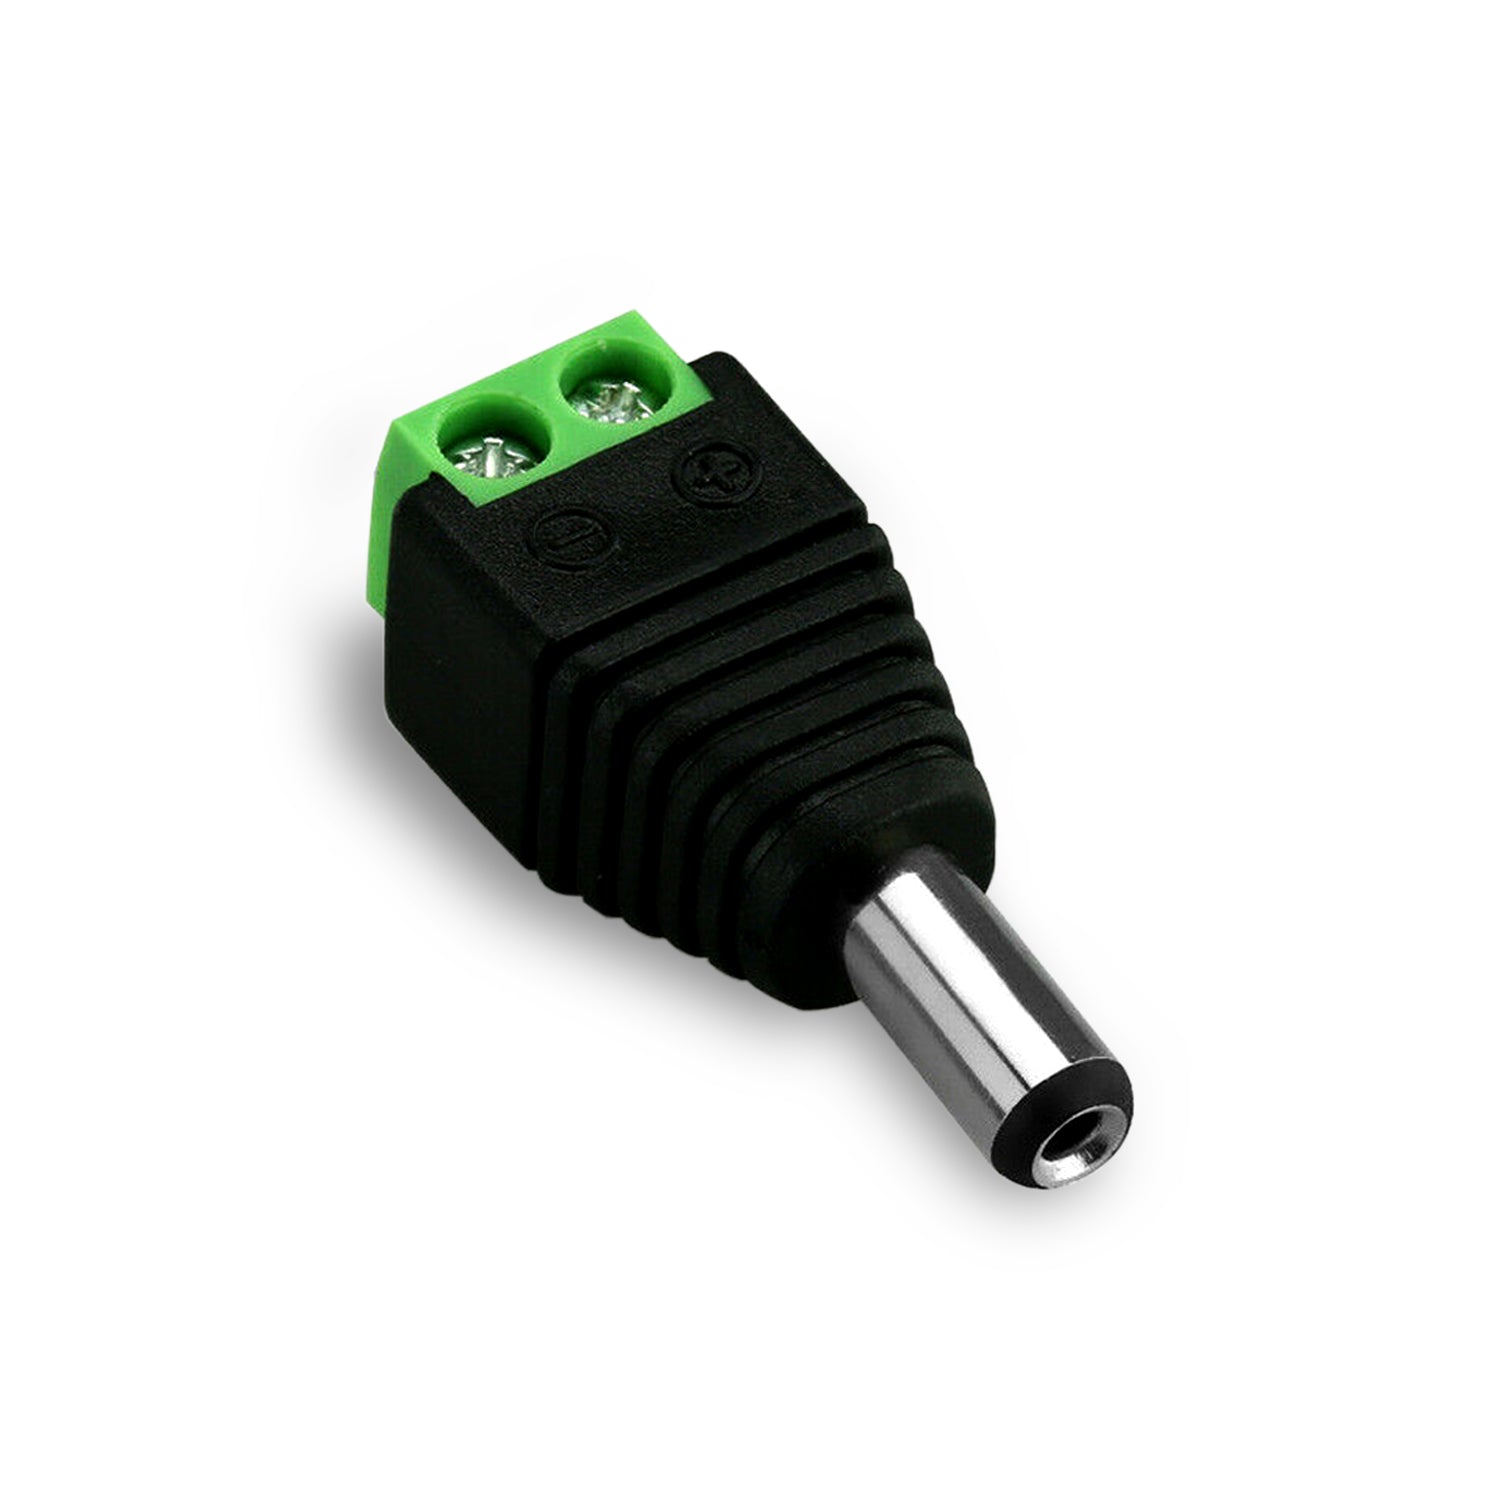 DC-Stromanschluss männlich Klinkenstecker Stecker Adapter